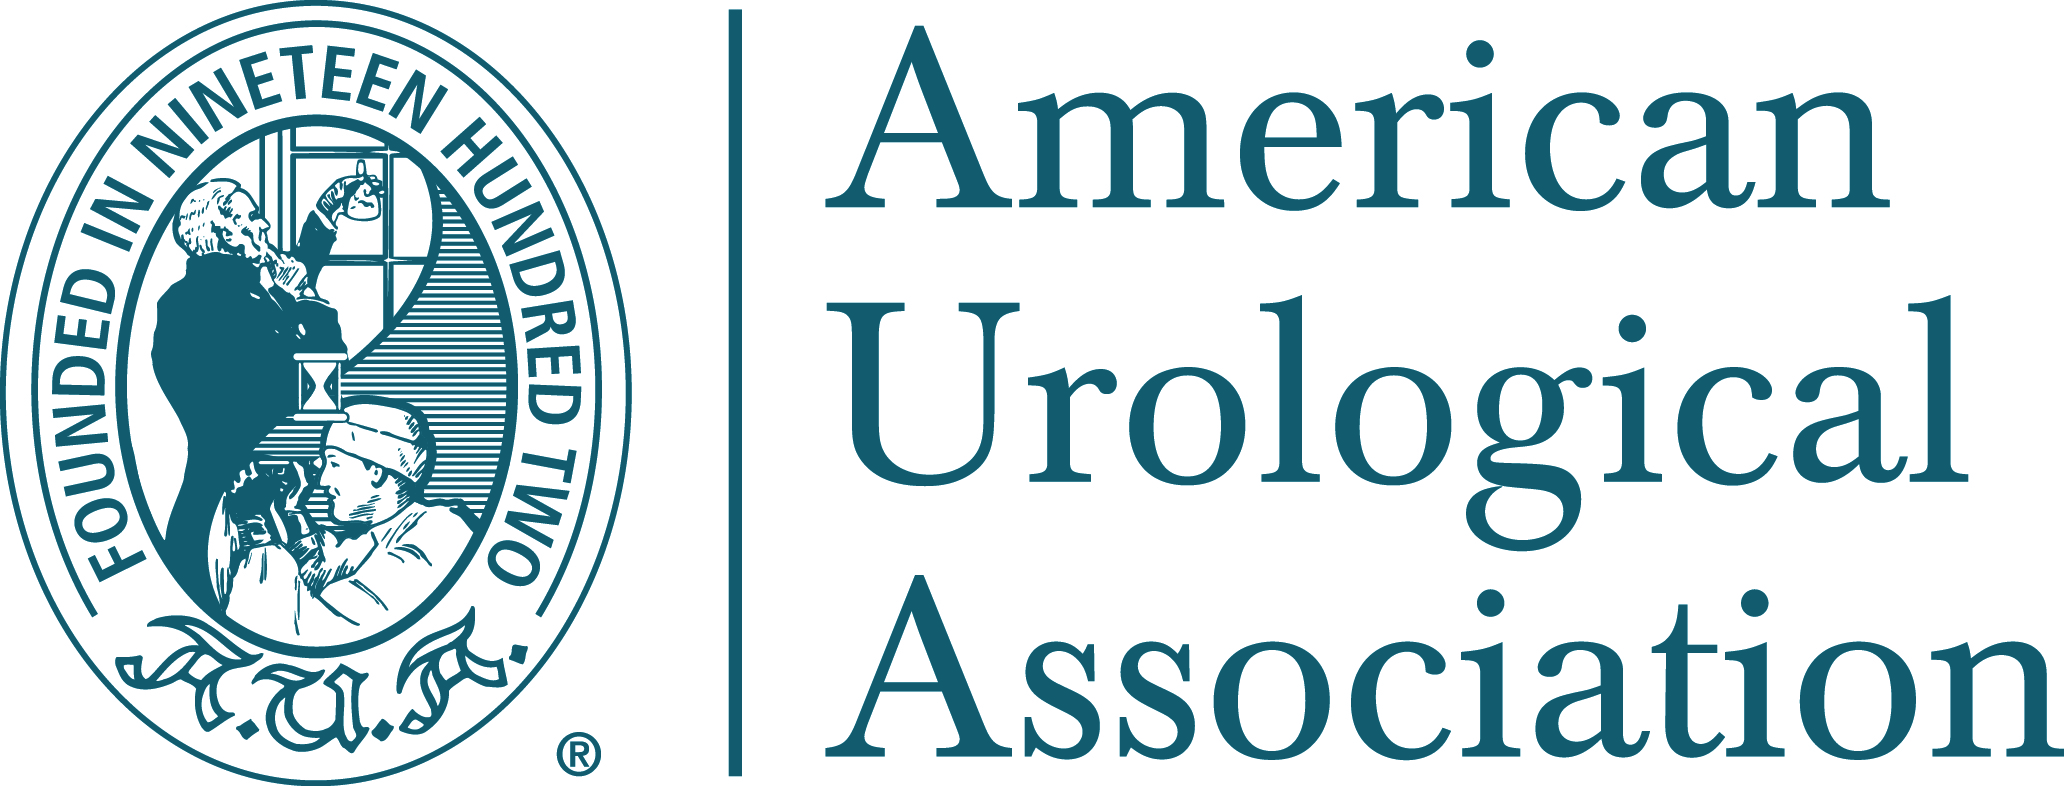 AUA 2021 VIRTUAL - American Urological Association Annual Meeting / Virtual